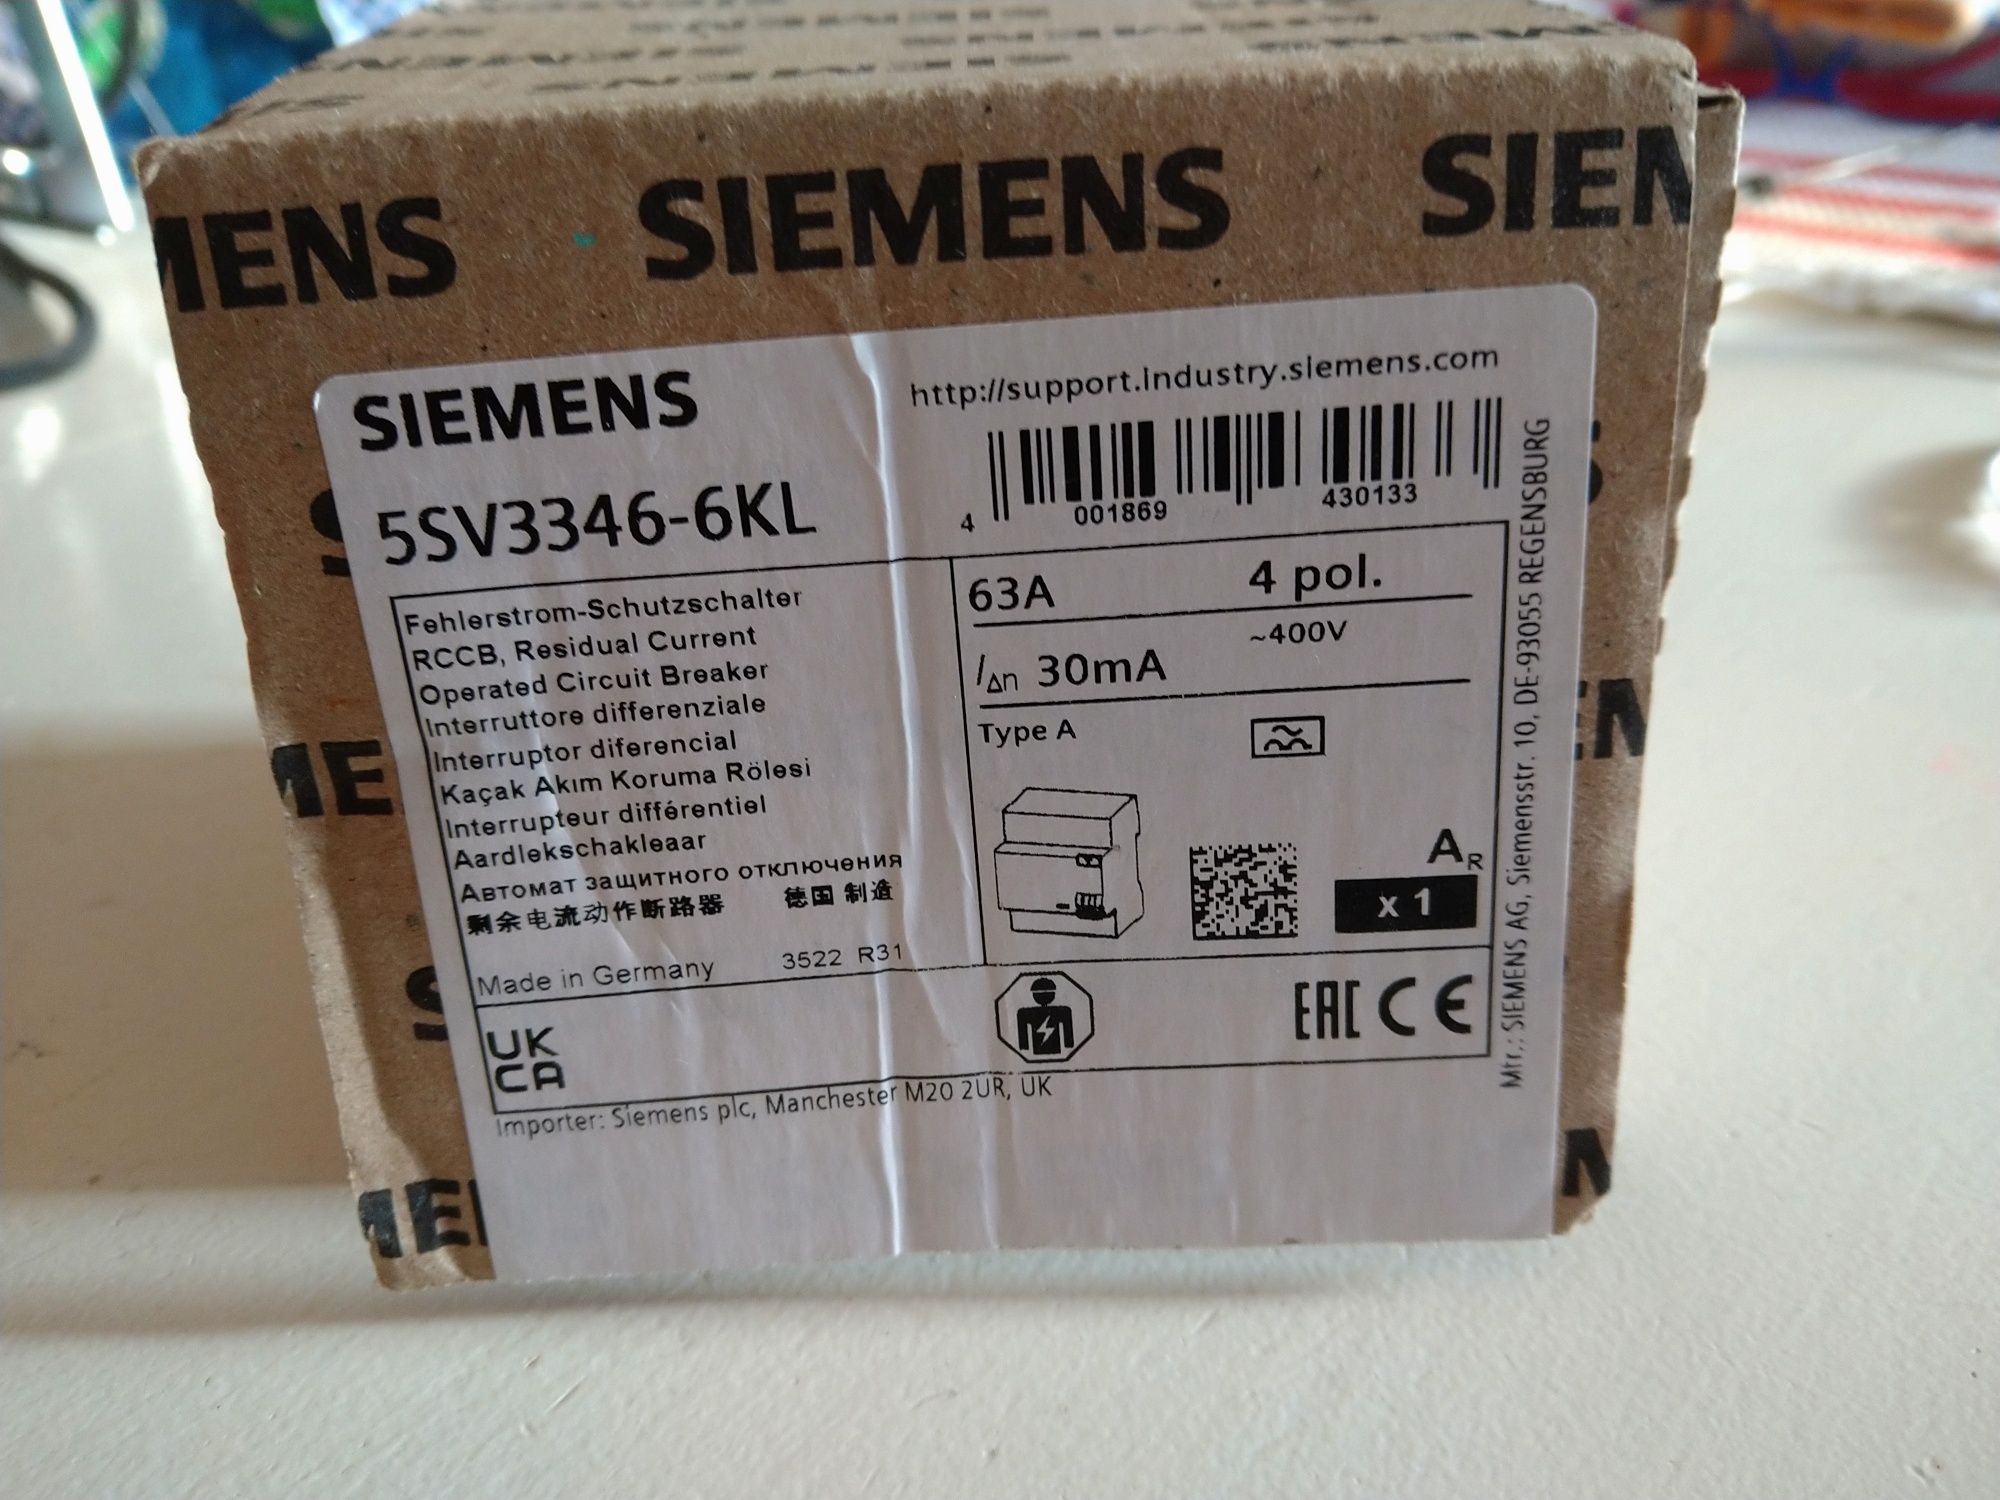 Interruptor diferencial da Siemens